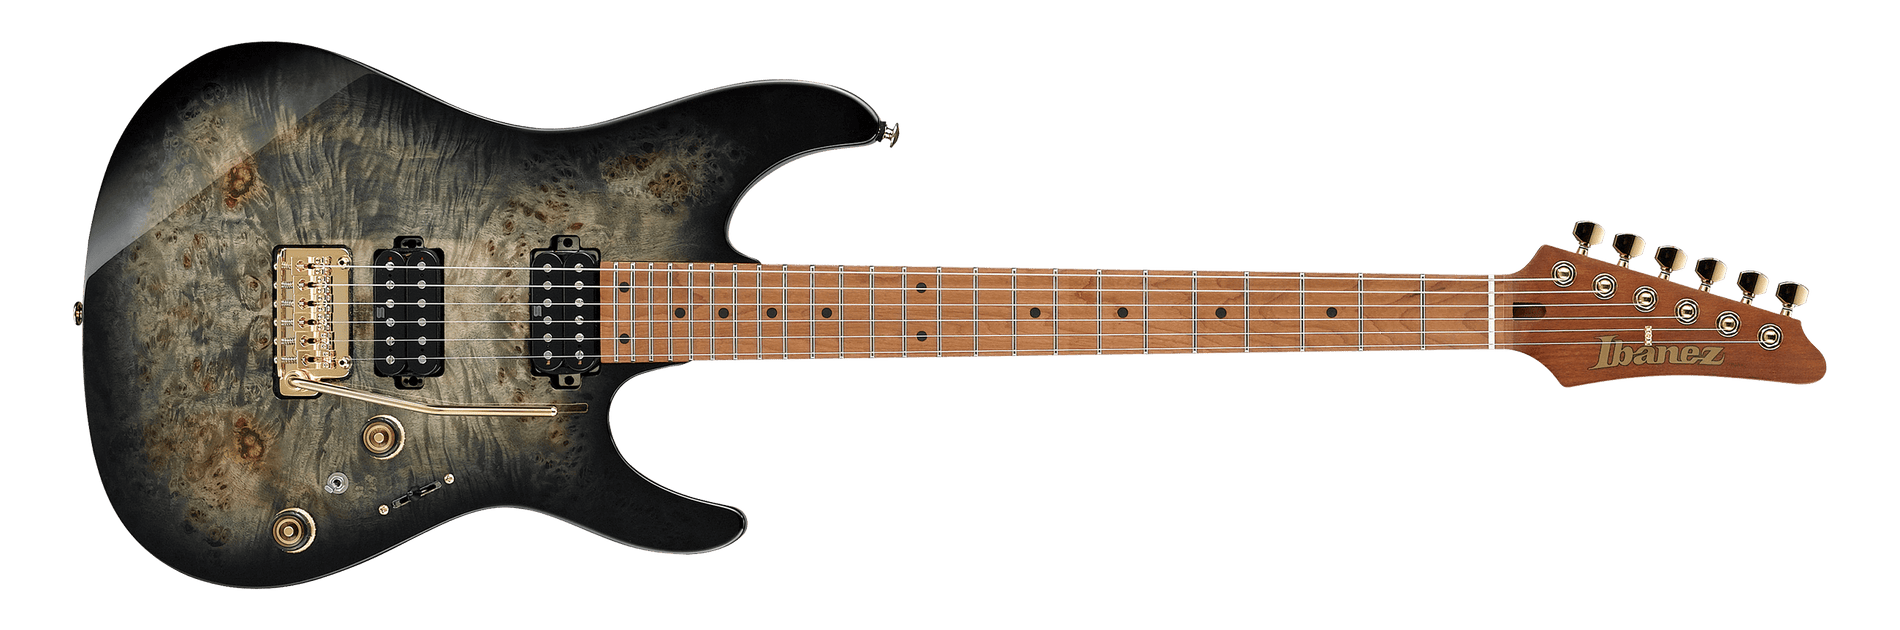 Ibanez AZ Premium 242PBG-CKB定価はおいくらですか - ギター